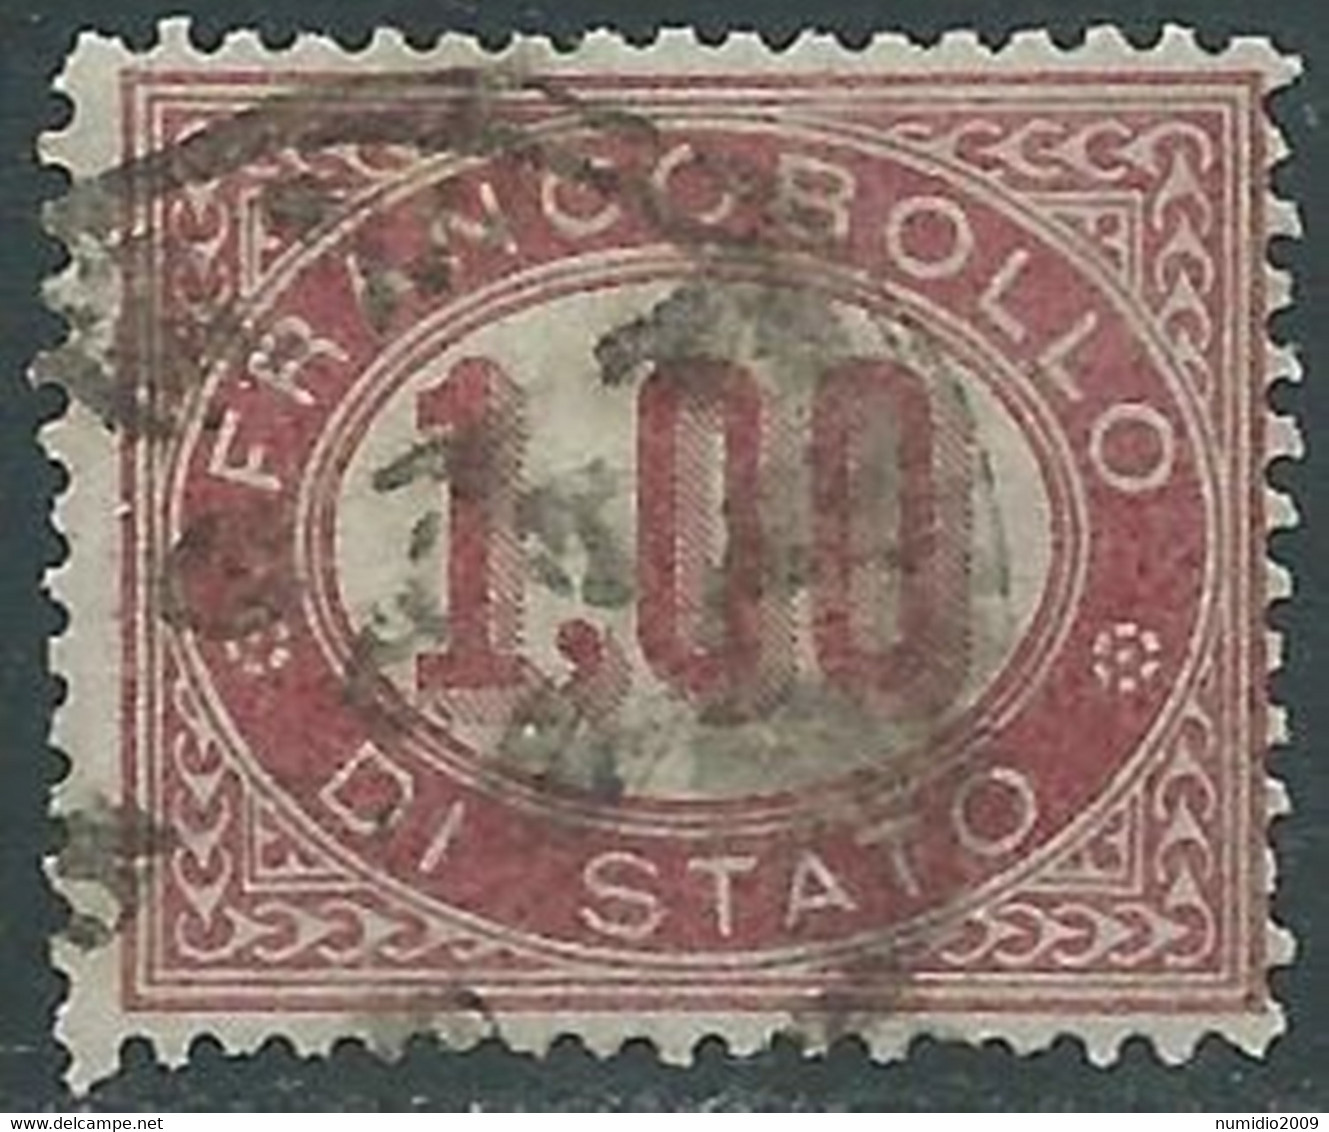 1875 REGNO SERVIZIO DI STATO USATO 1 LIRA - RE30-7 - Dienstmarken